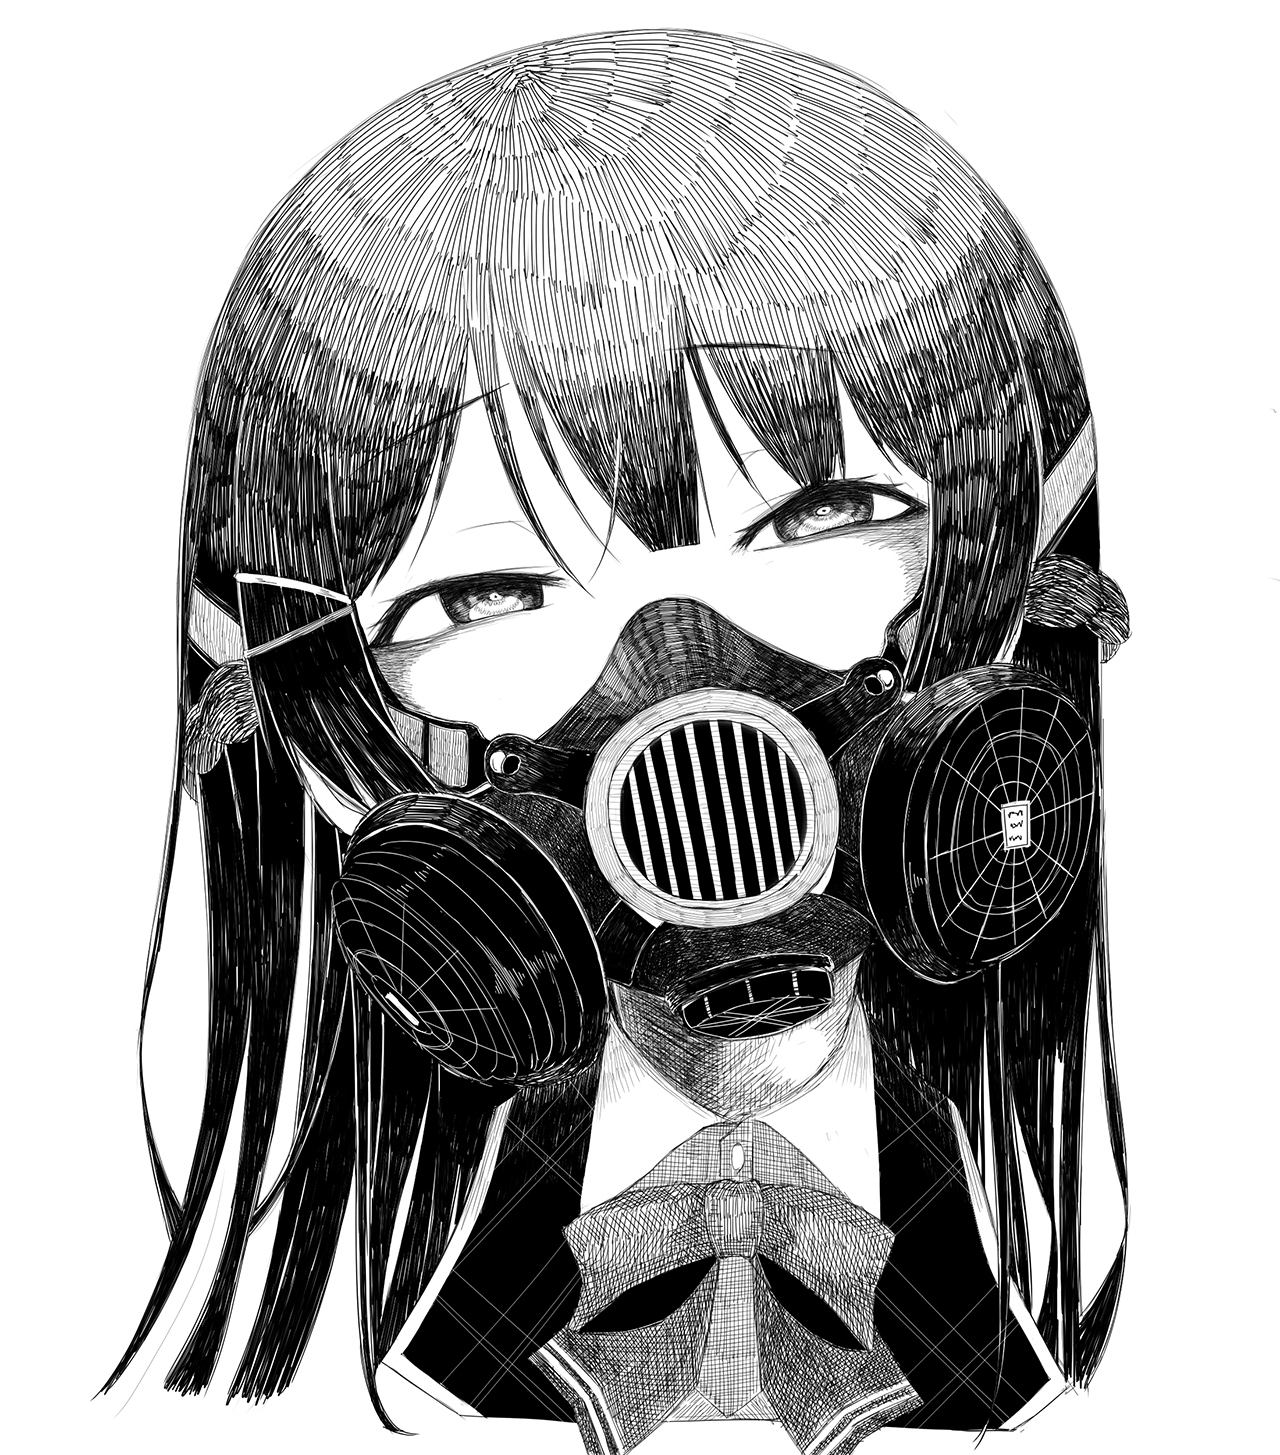 ガスマスク女子 イラスト集16枚 顔を覆う無機質な装置からただよう